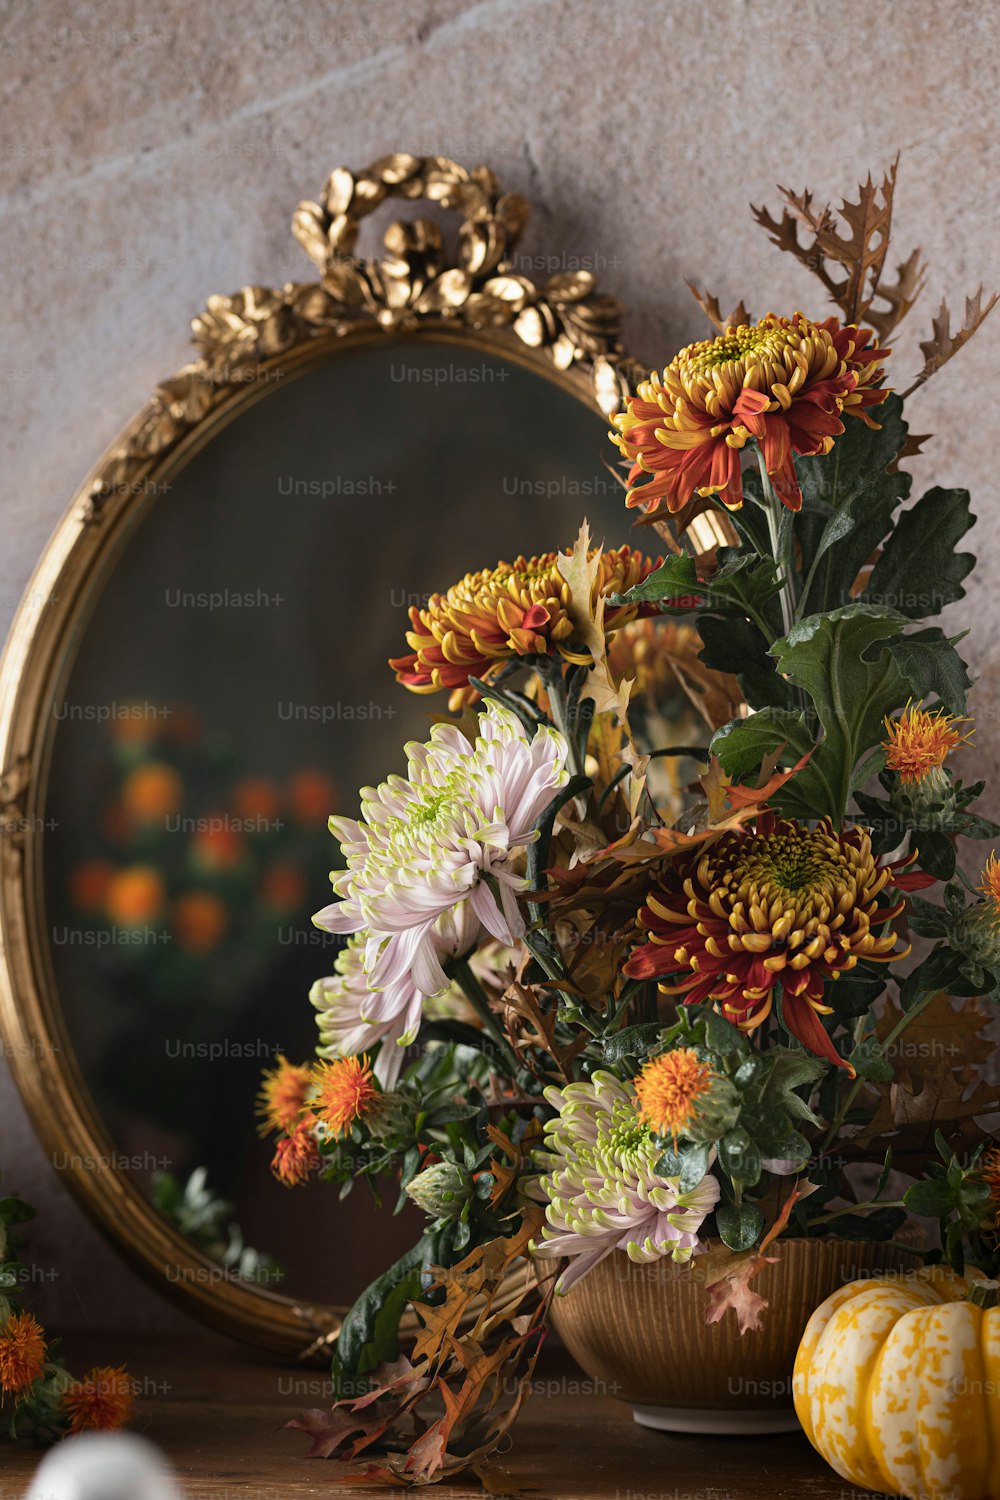 Un jarrón lleno de flores junto a un espejo